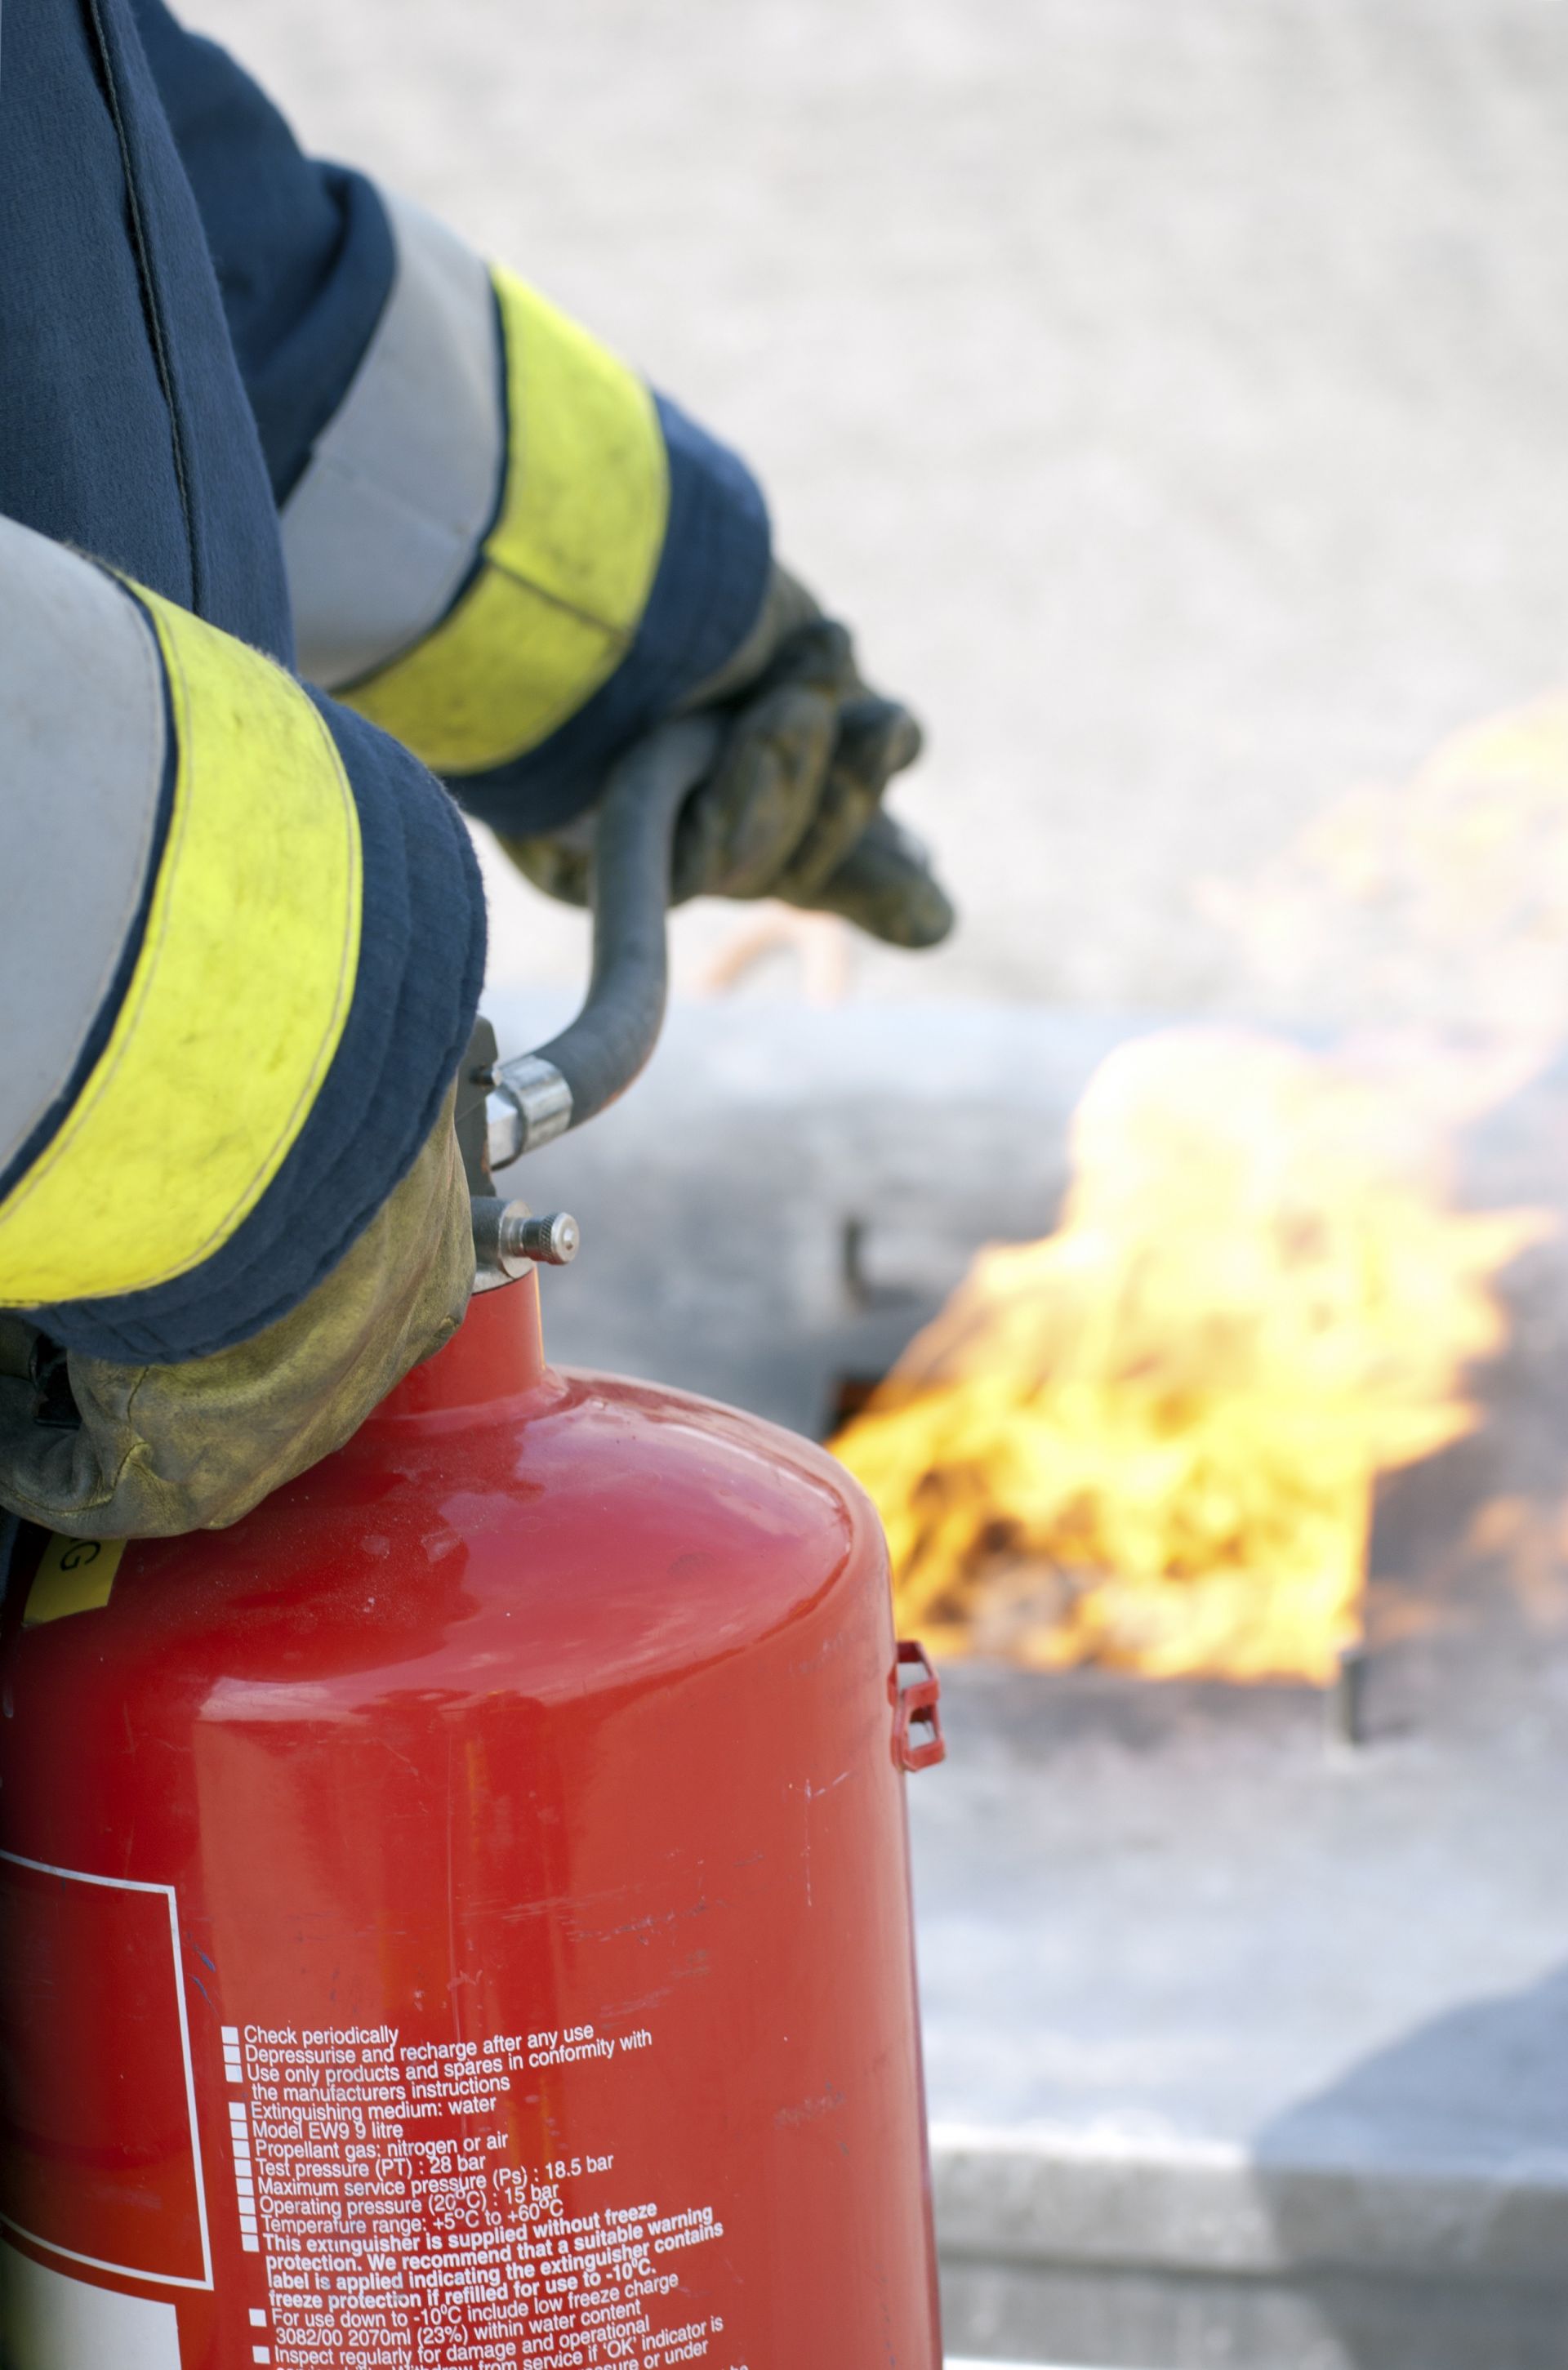 Poptávka na realizaci doplňkového hasicího zařízení pro bytový dům (Požární technika a systémy) - Litoměřice